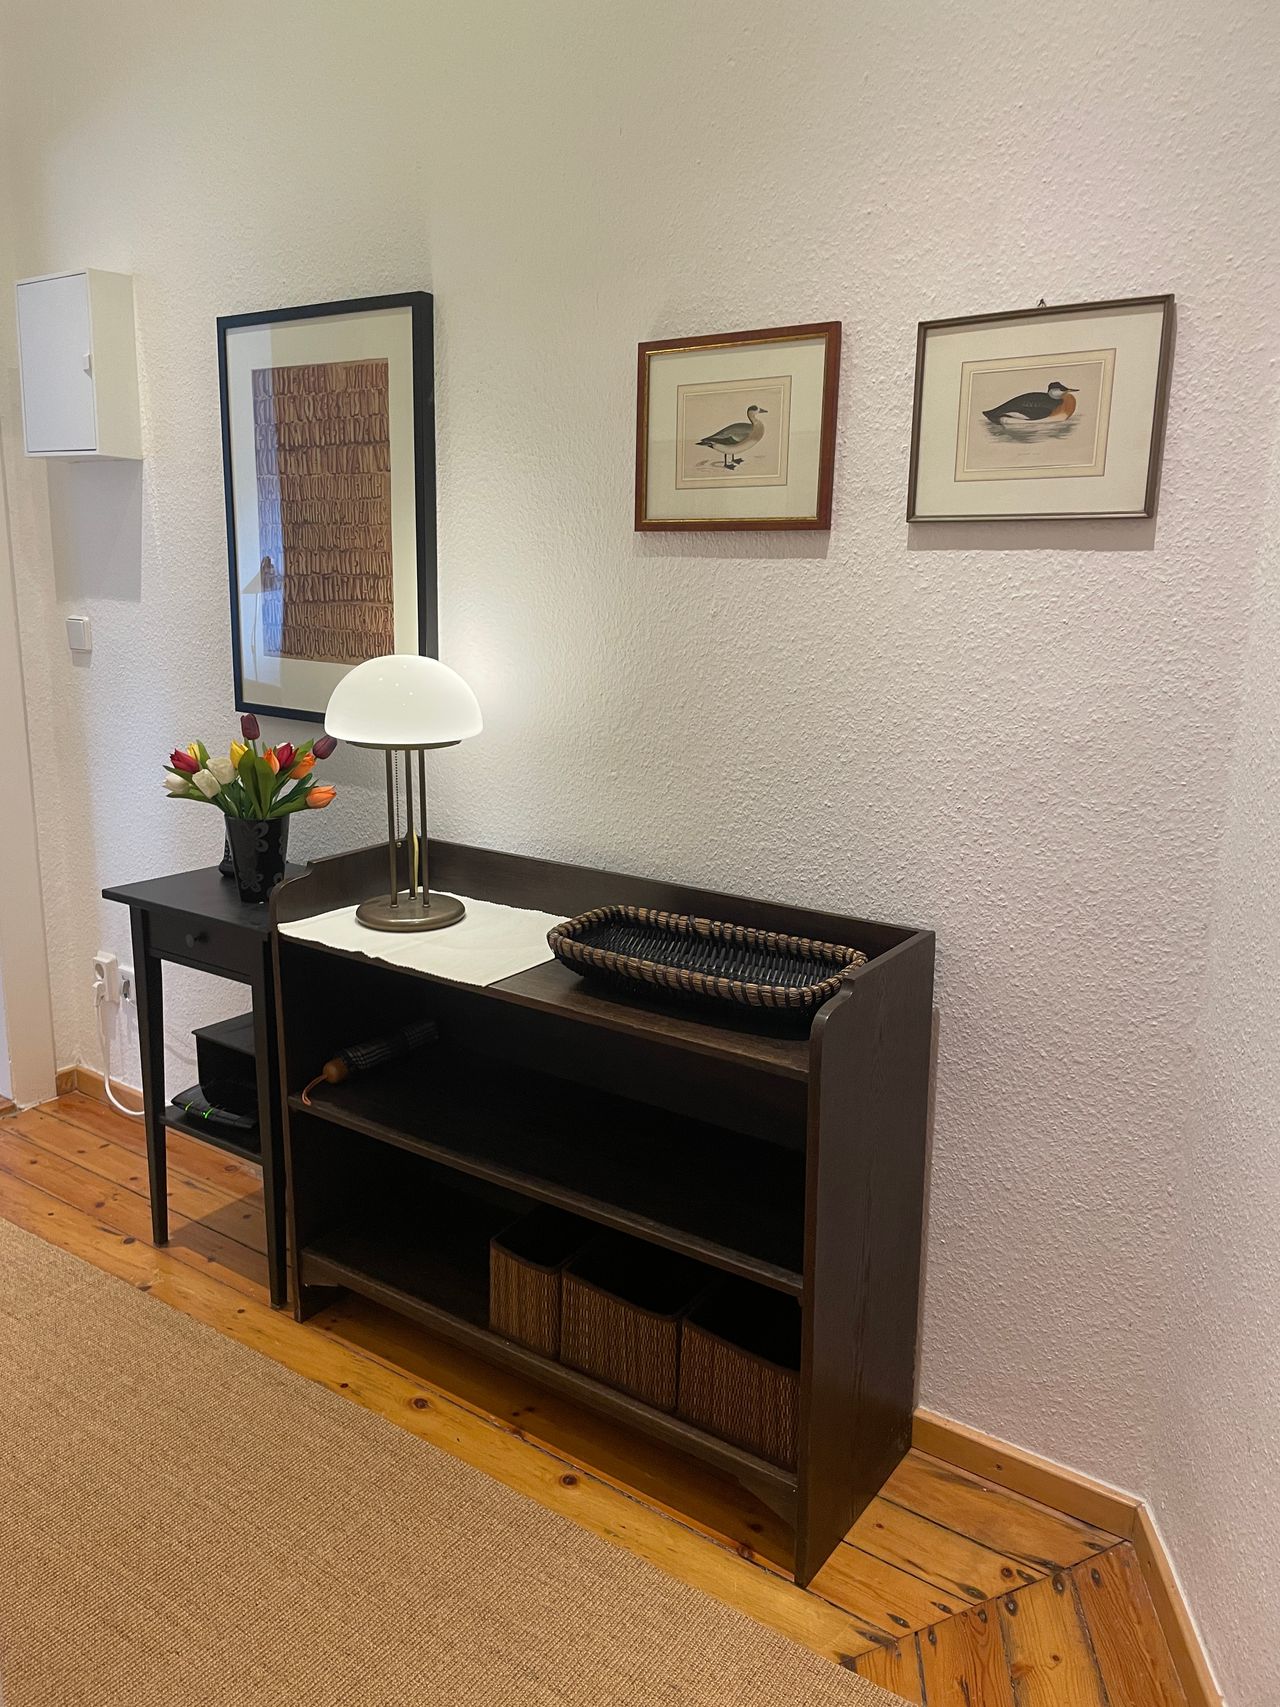 154 | Cozy one bedroom apartment in Prenzlauer Berg